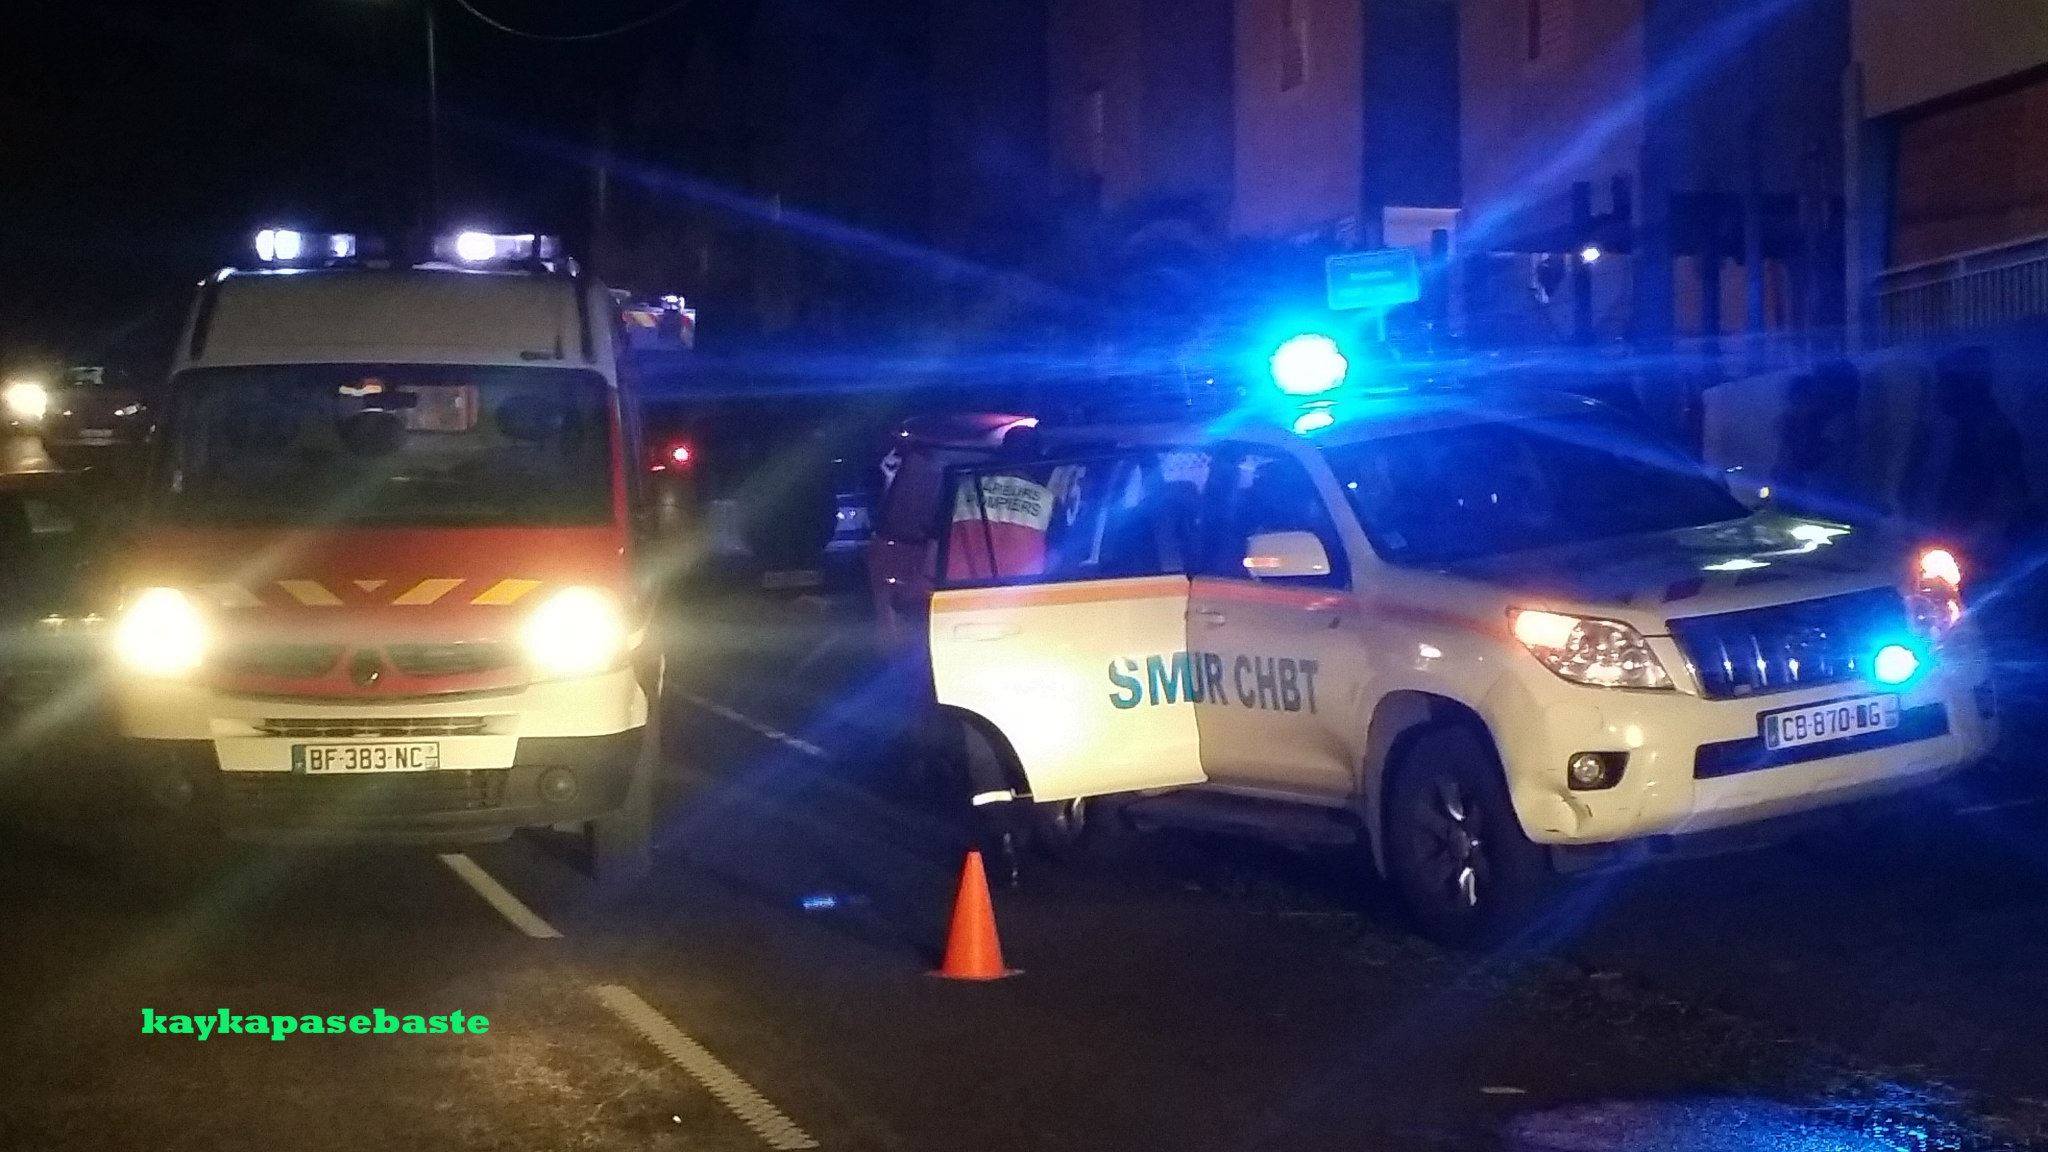 GUADELOUPE. Grave accident de la circulation ce dimanche soir à Vieux habitants, un homme a trouvé la mort.